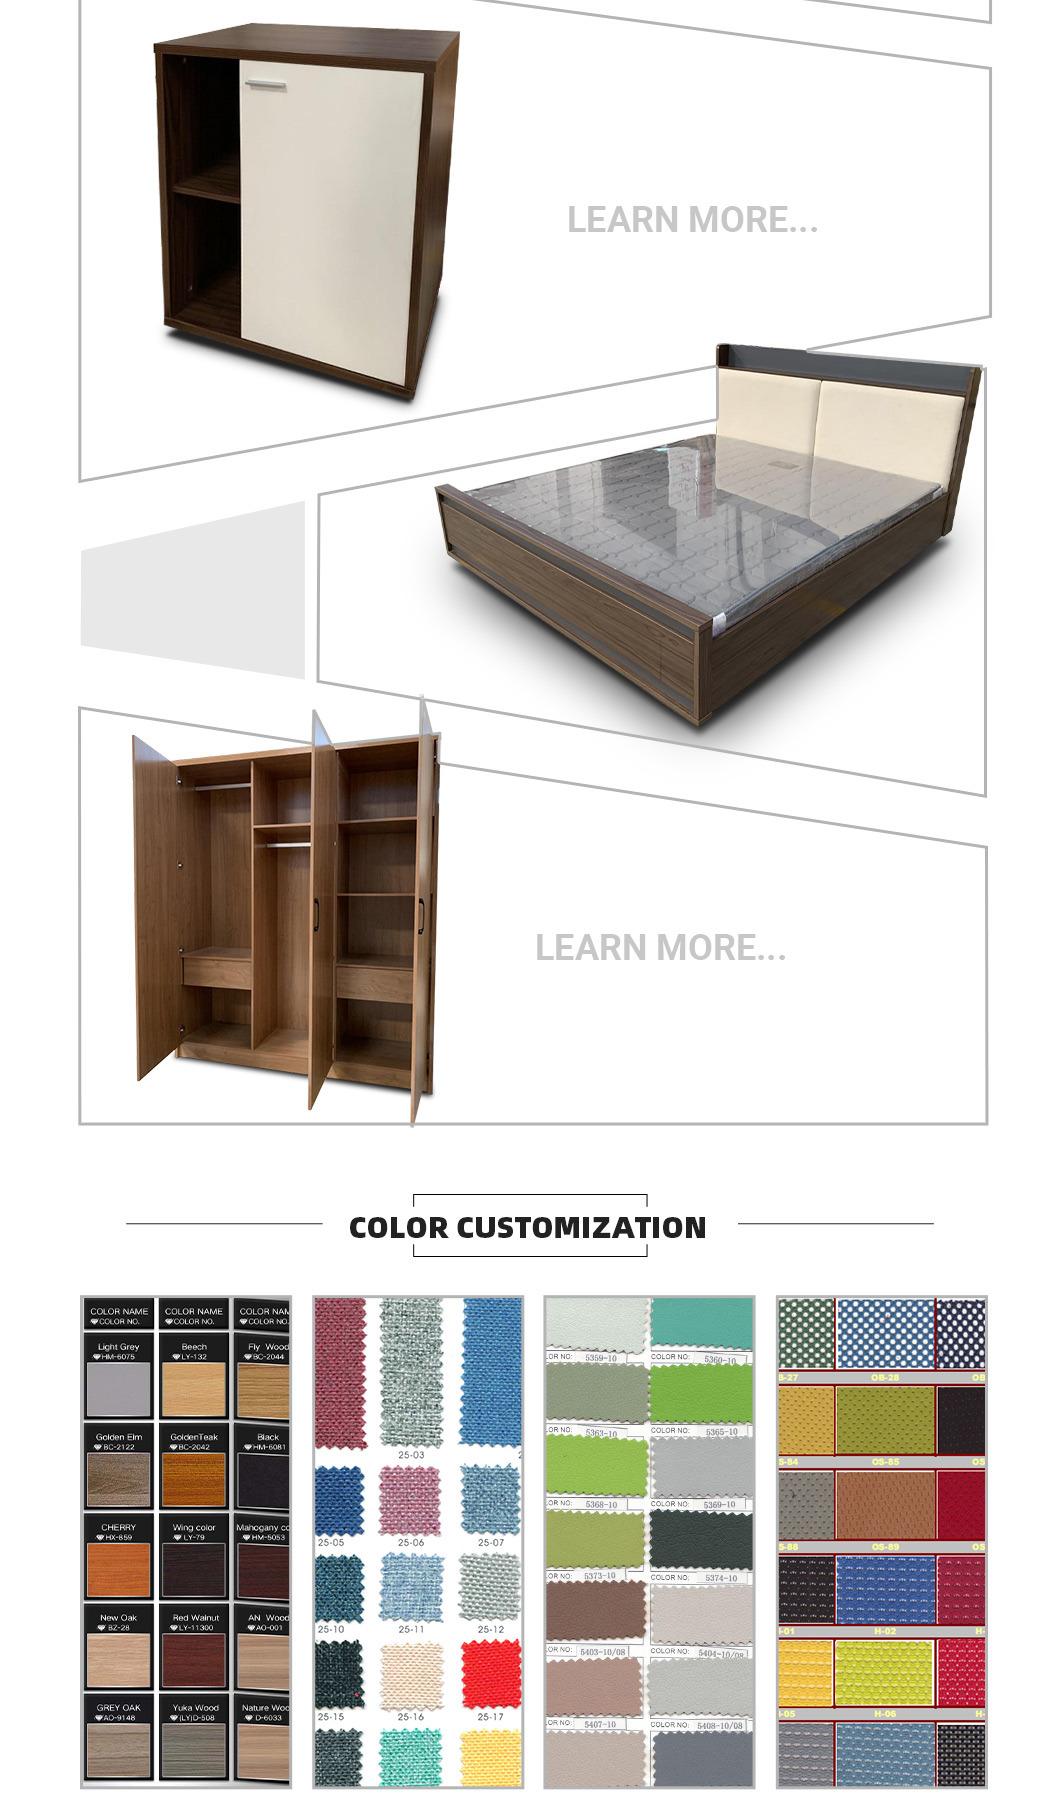 Dark Gray Color Modern Design Melamine Laminated Bedroom Furniture Wooden Storage Beds